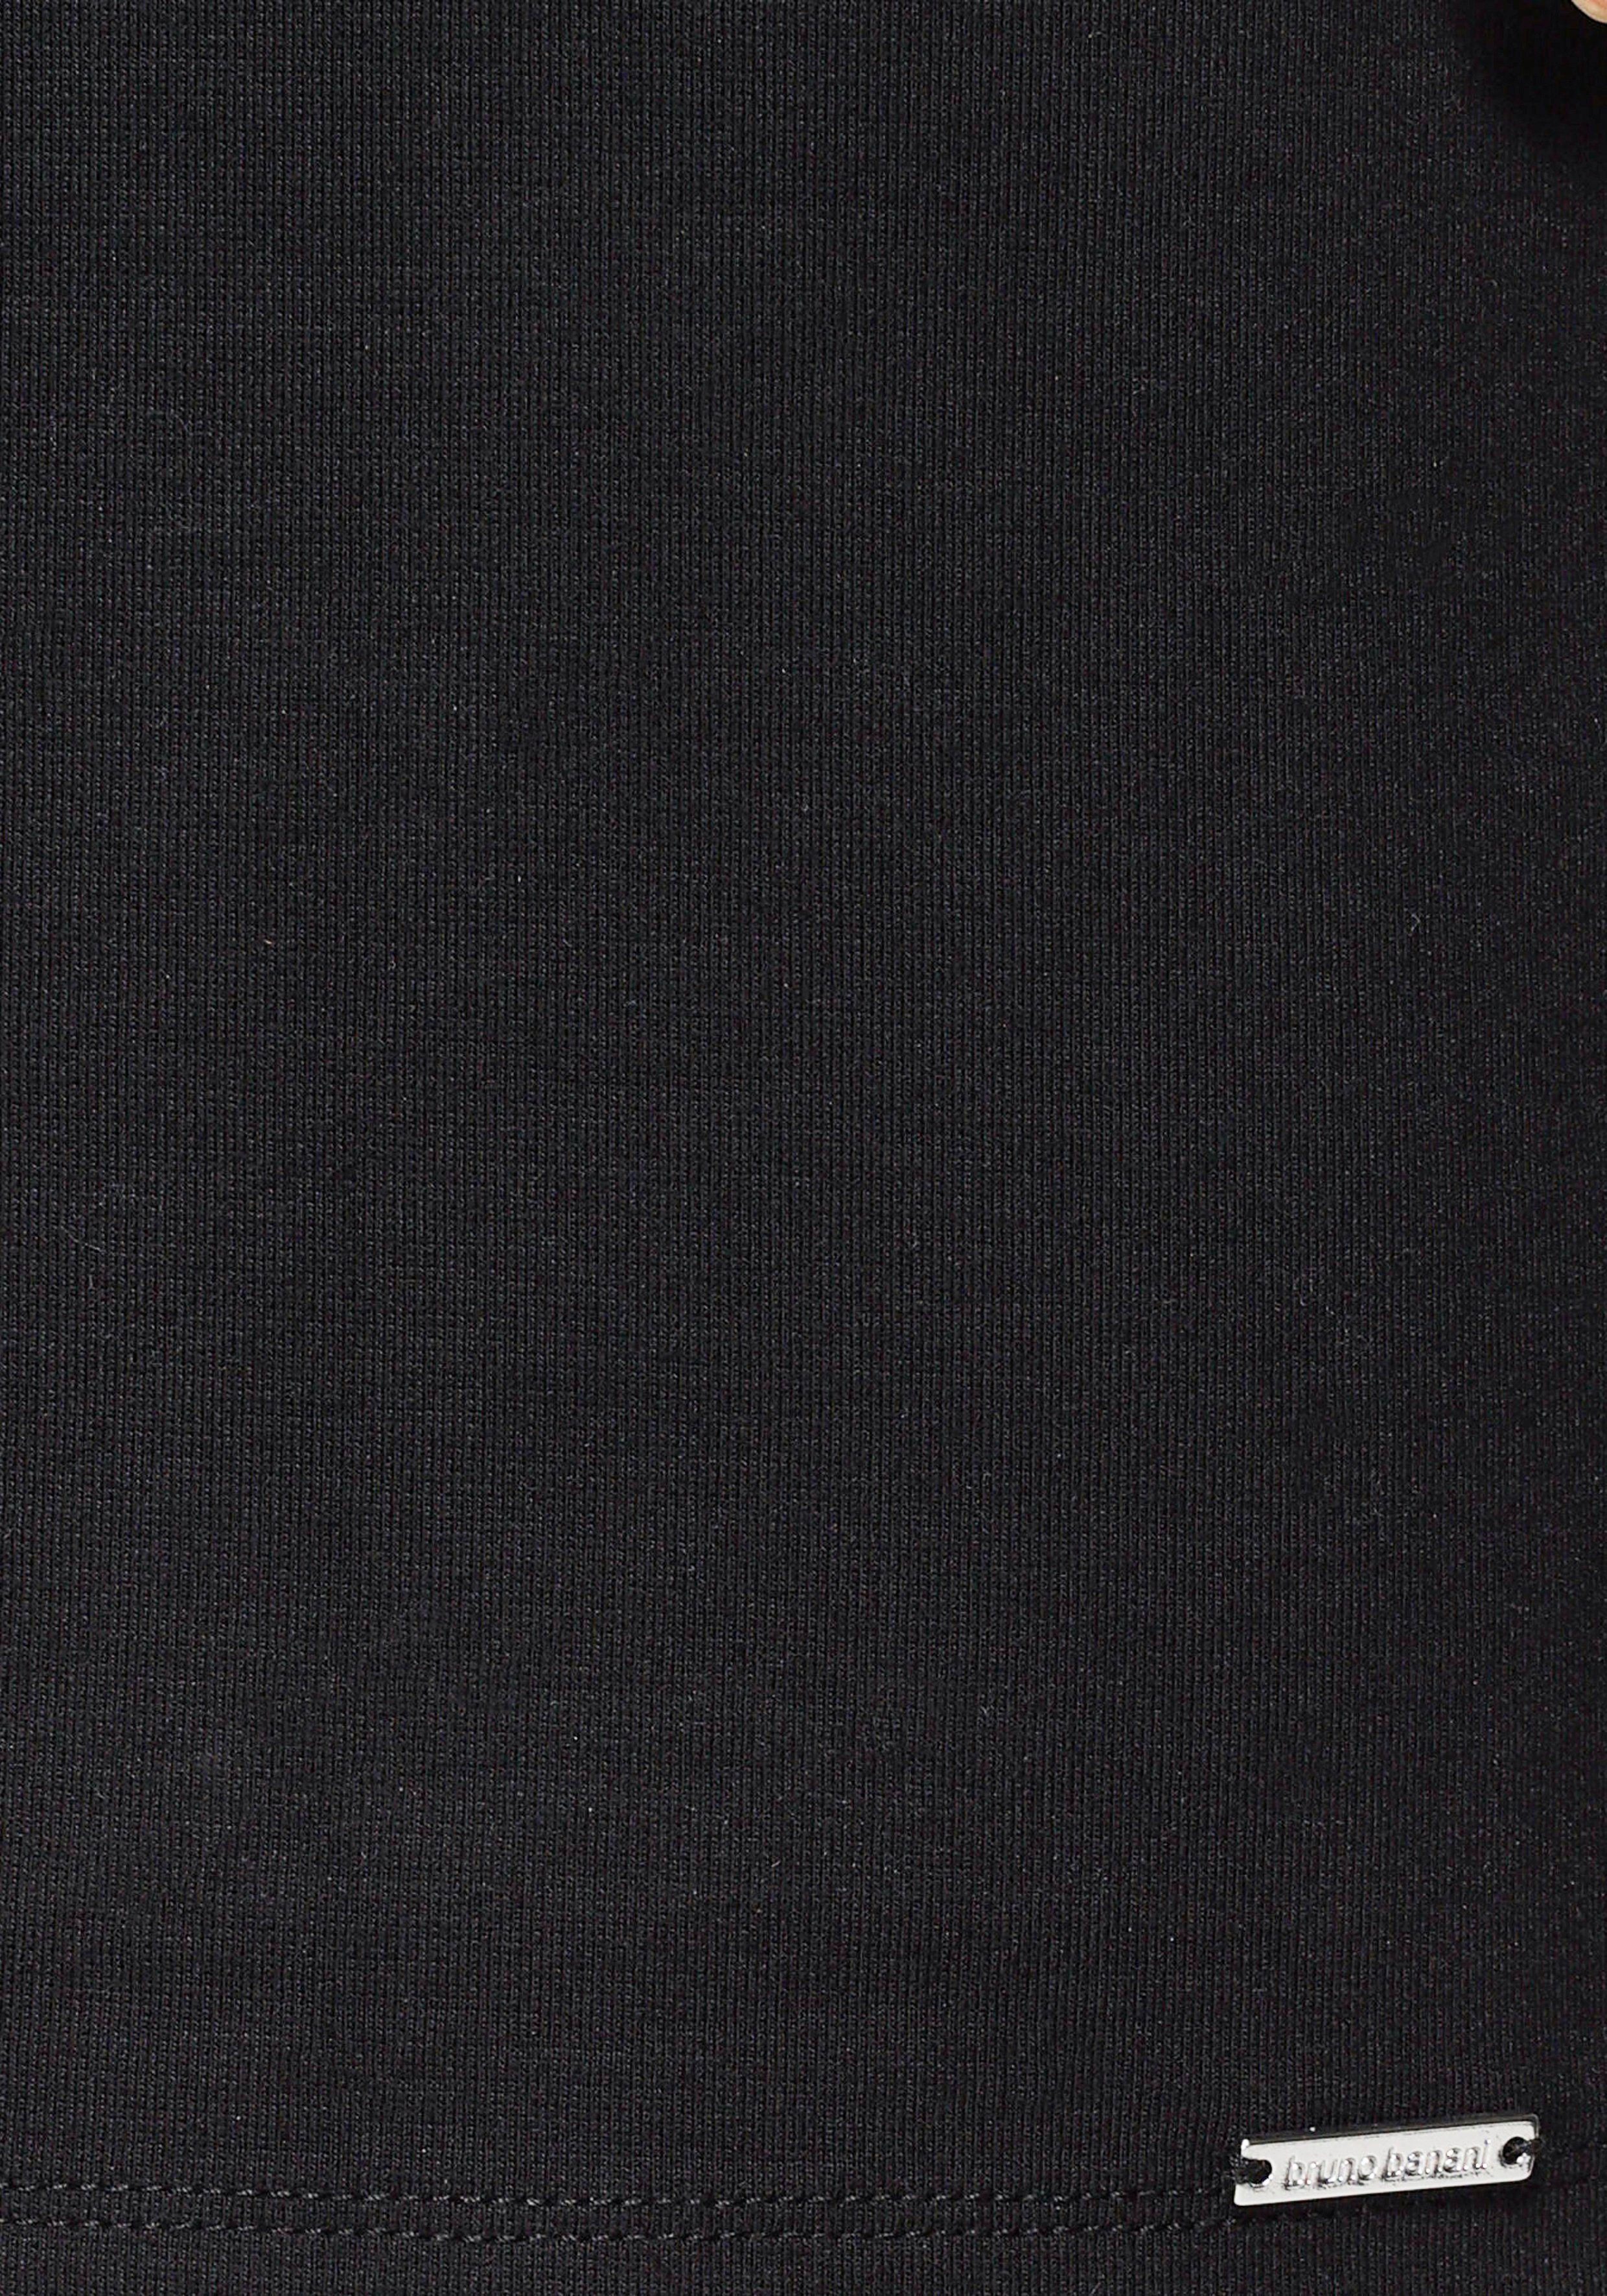 Gummizug aus NEUE Banani Bruno schwarz KOLLEKTION - mit nachhaltigem Jerseykleid ( Jerseykleid Material)